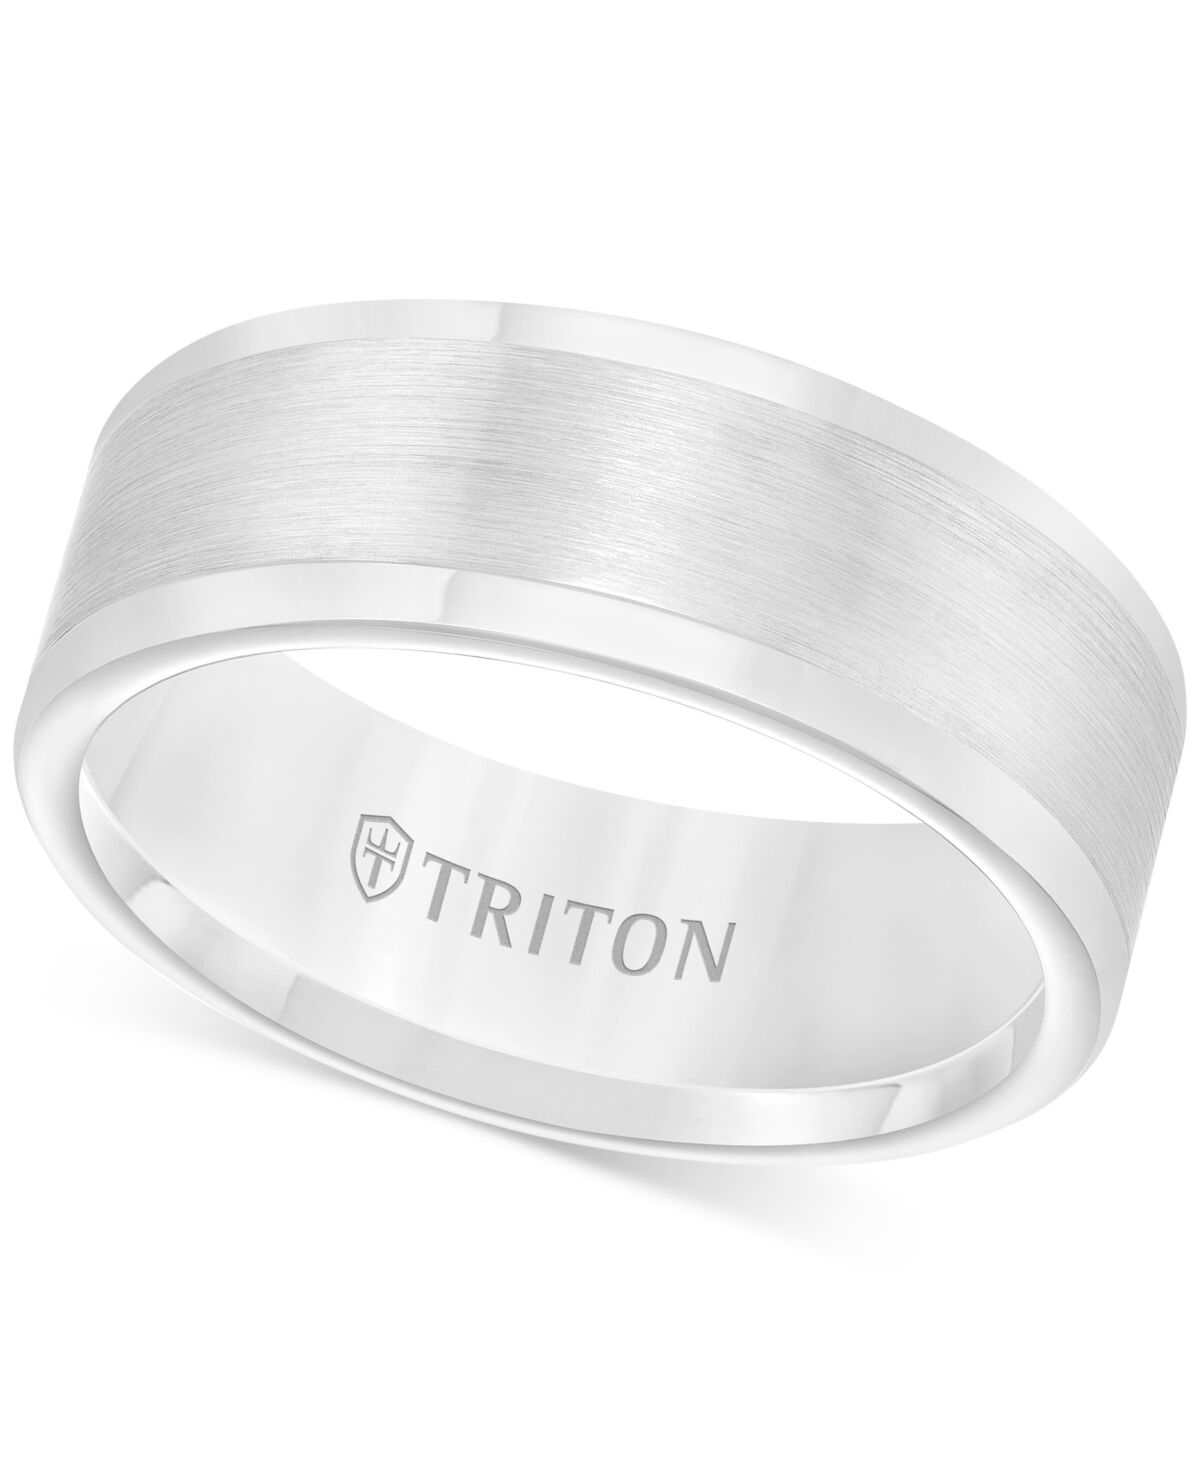 Triton Men's Ring, 8mm Wedding Band in White or Black Tungsten - White Tungsten